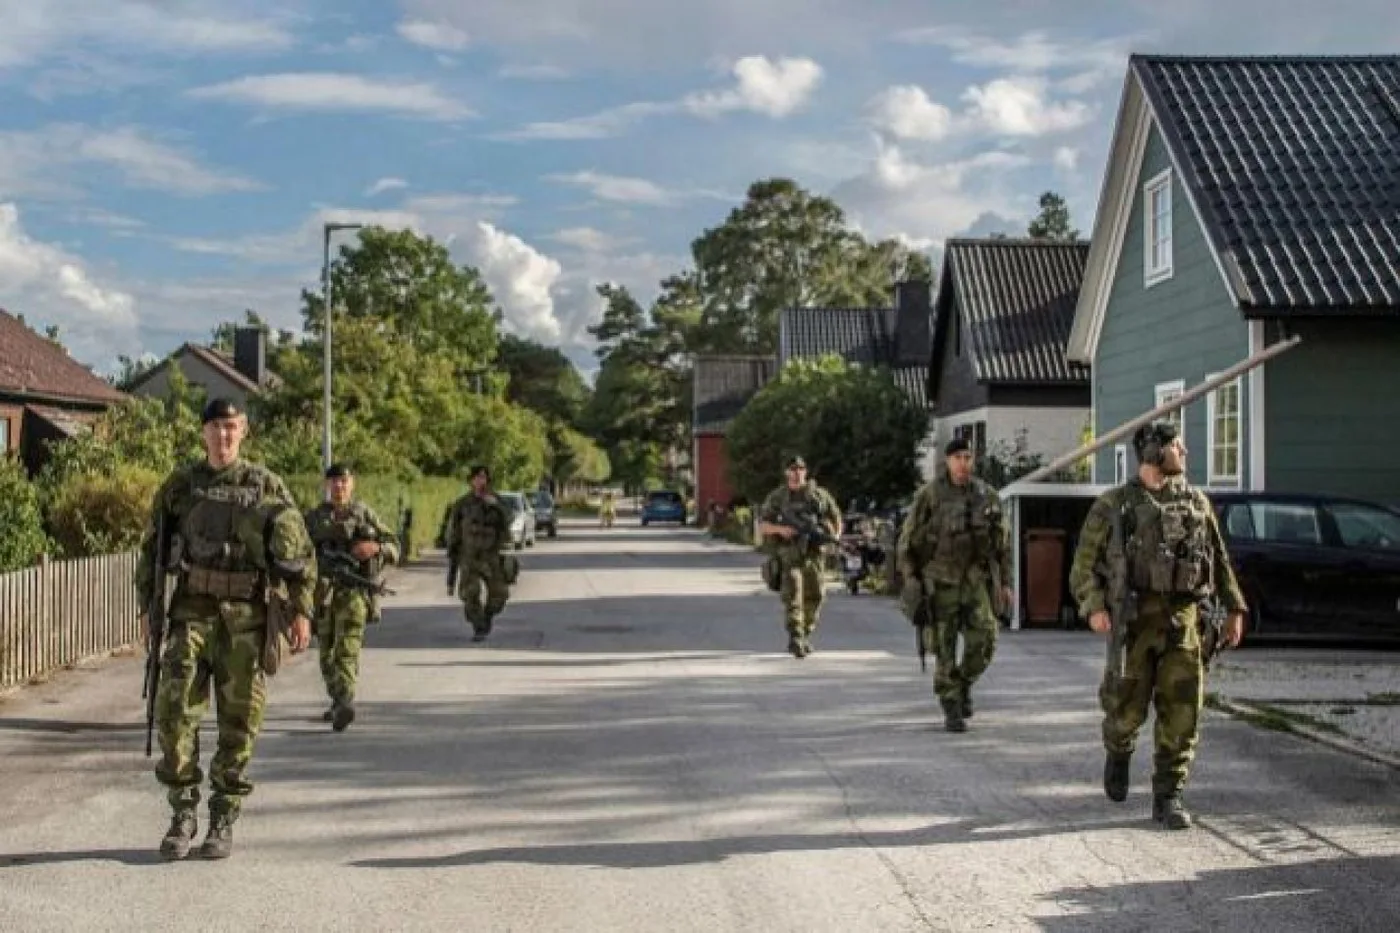 En los próximos cinco años, Suecia aumentará un 40% su presupuesto militar, que ahora equivale al 1,1% de su PIB.